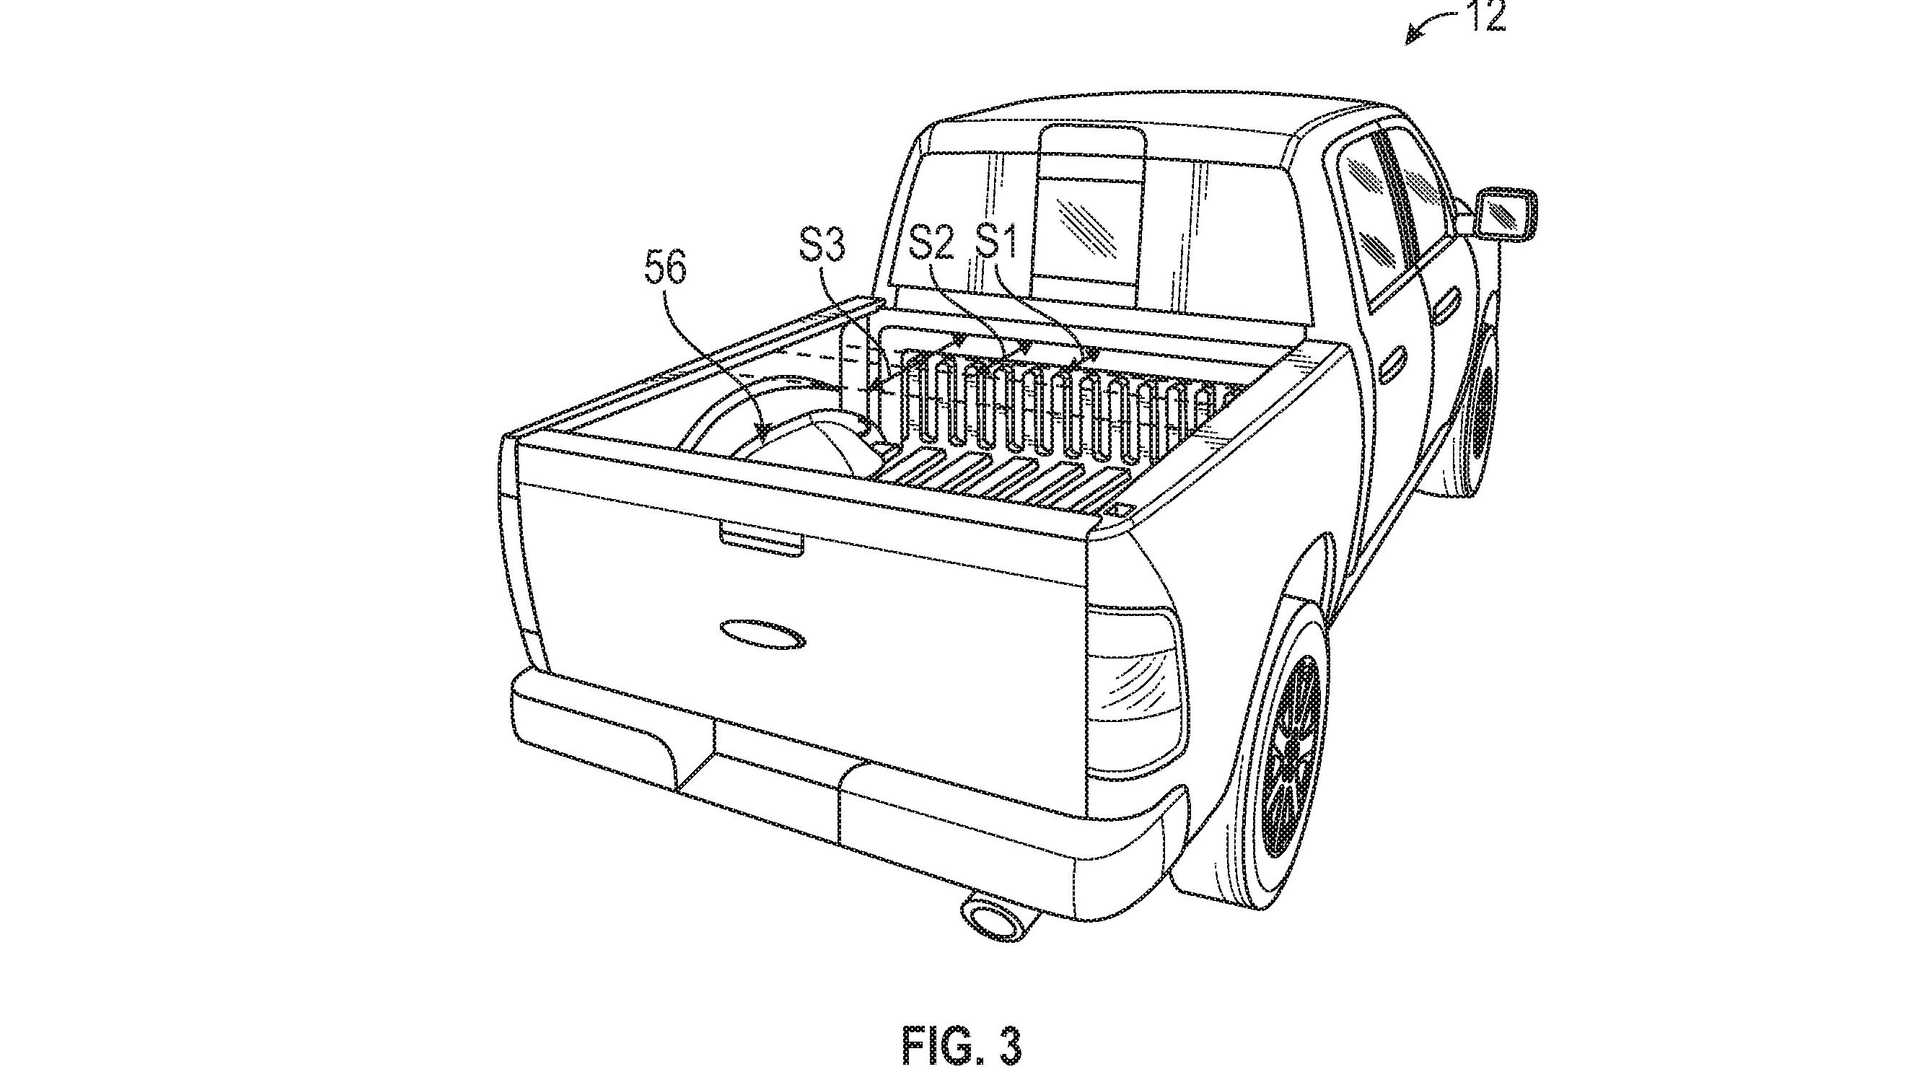 福特F-150电气专利展示了增程燃气发生器